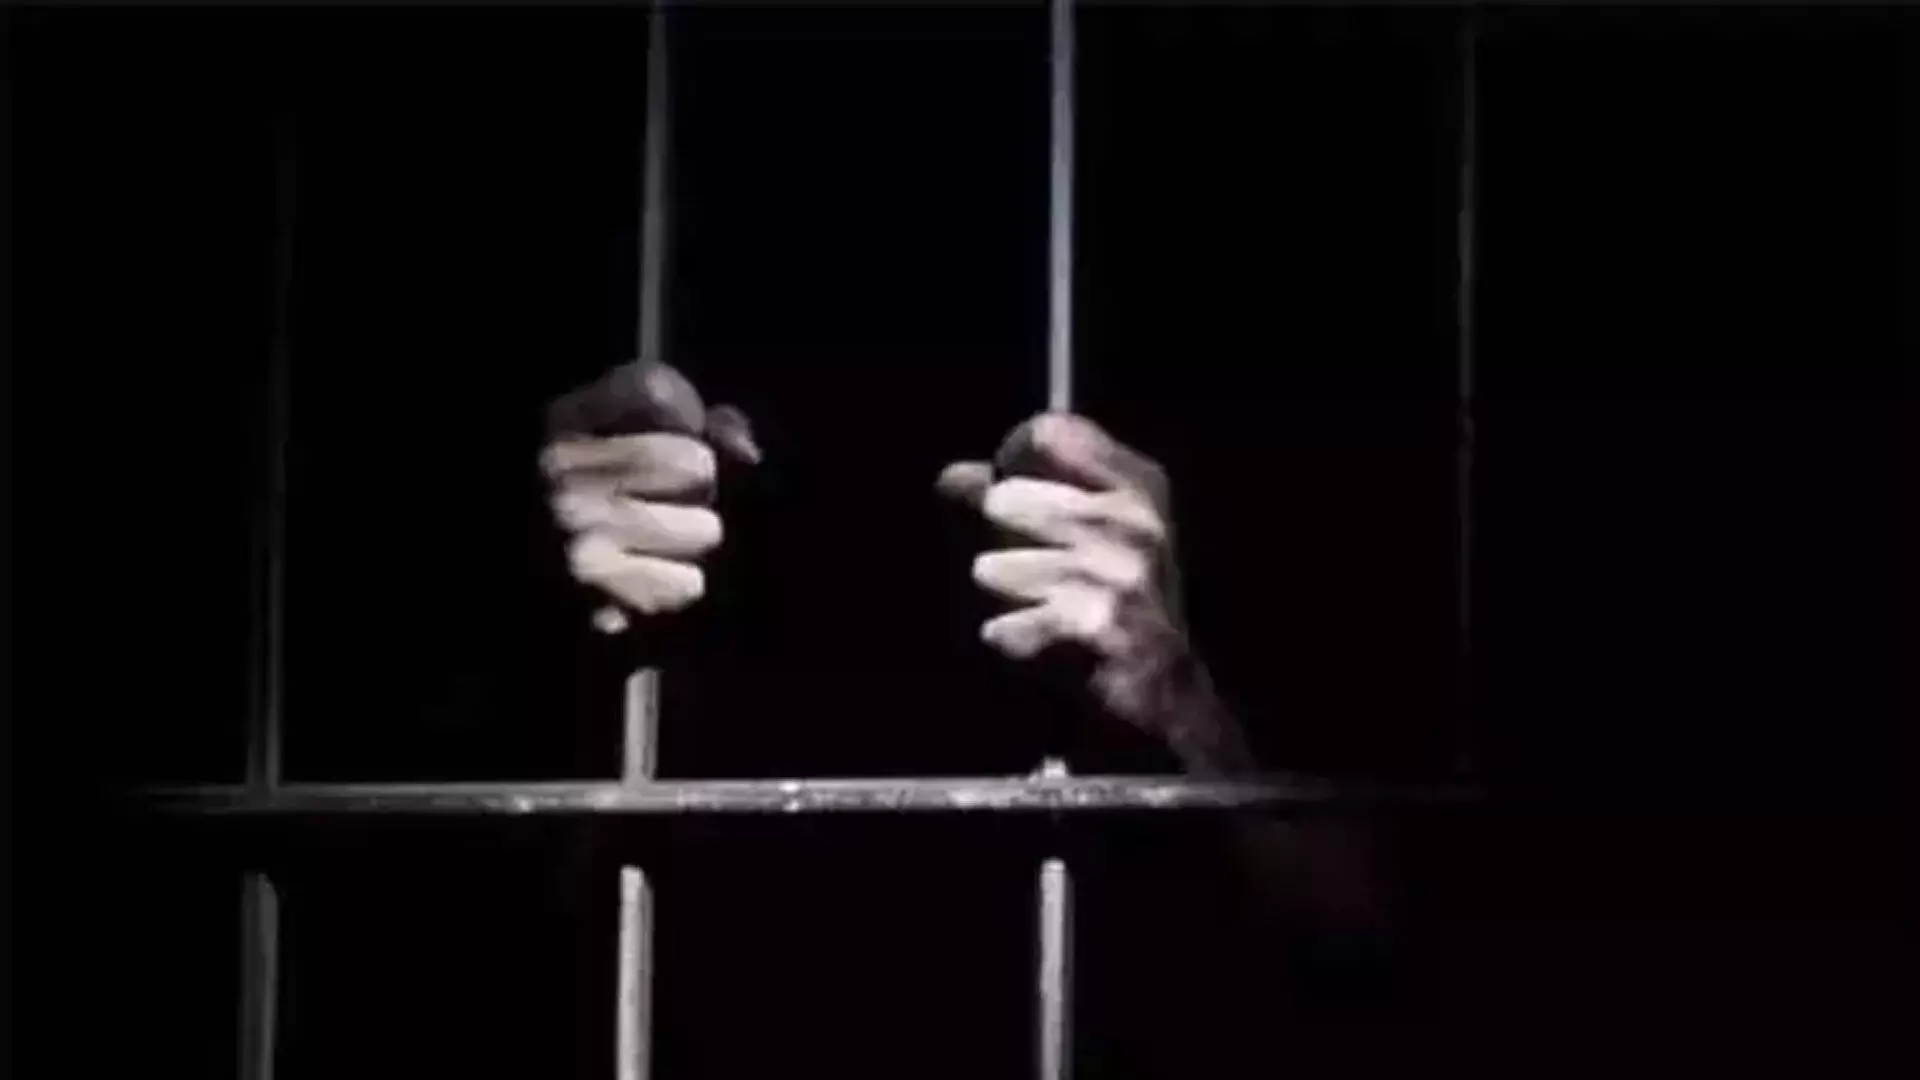 CRPF जवान की हिरासत में मौत के मामले में इंस्पेक्टर और दो पुलिसकर्मियों को कारावास